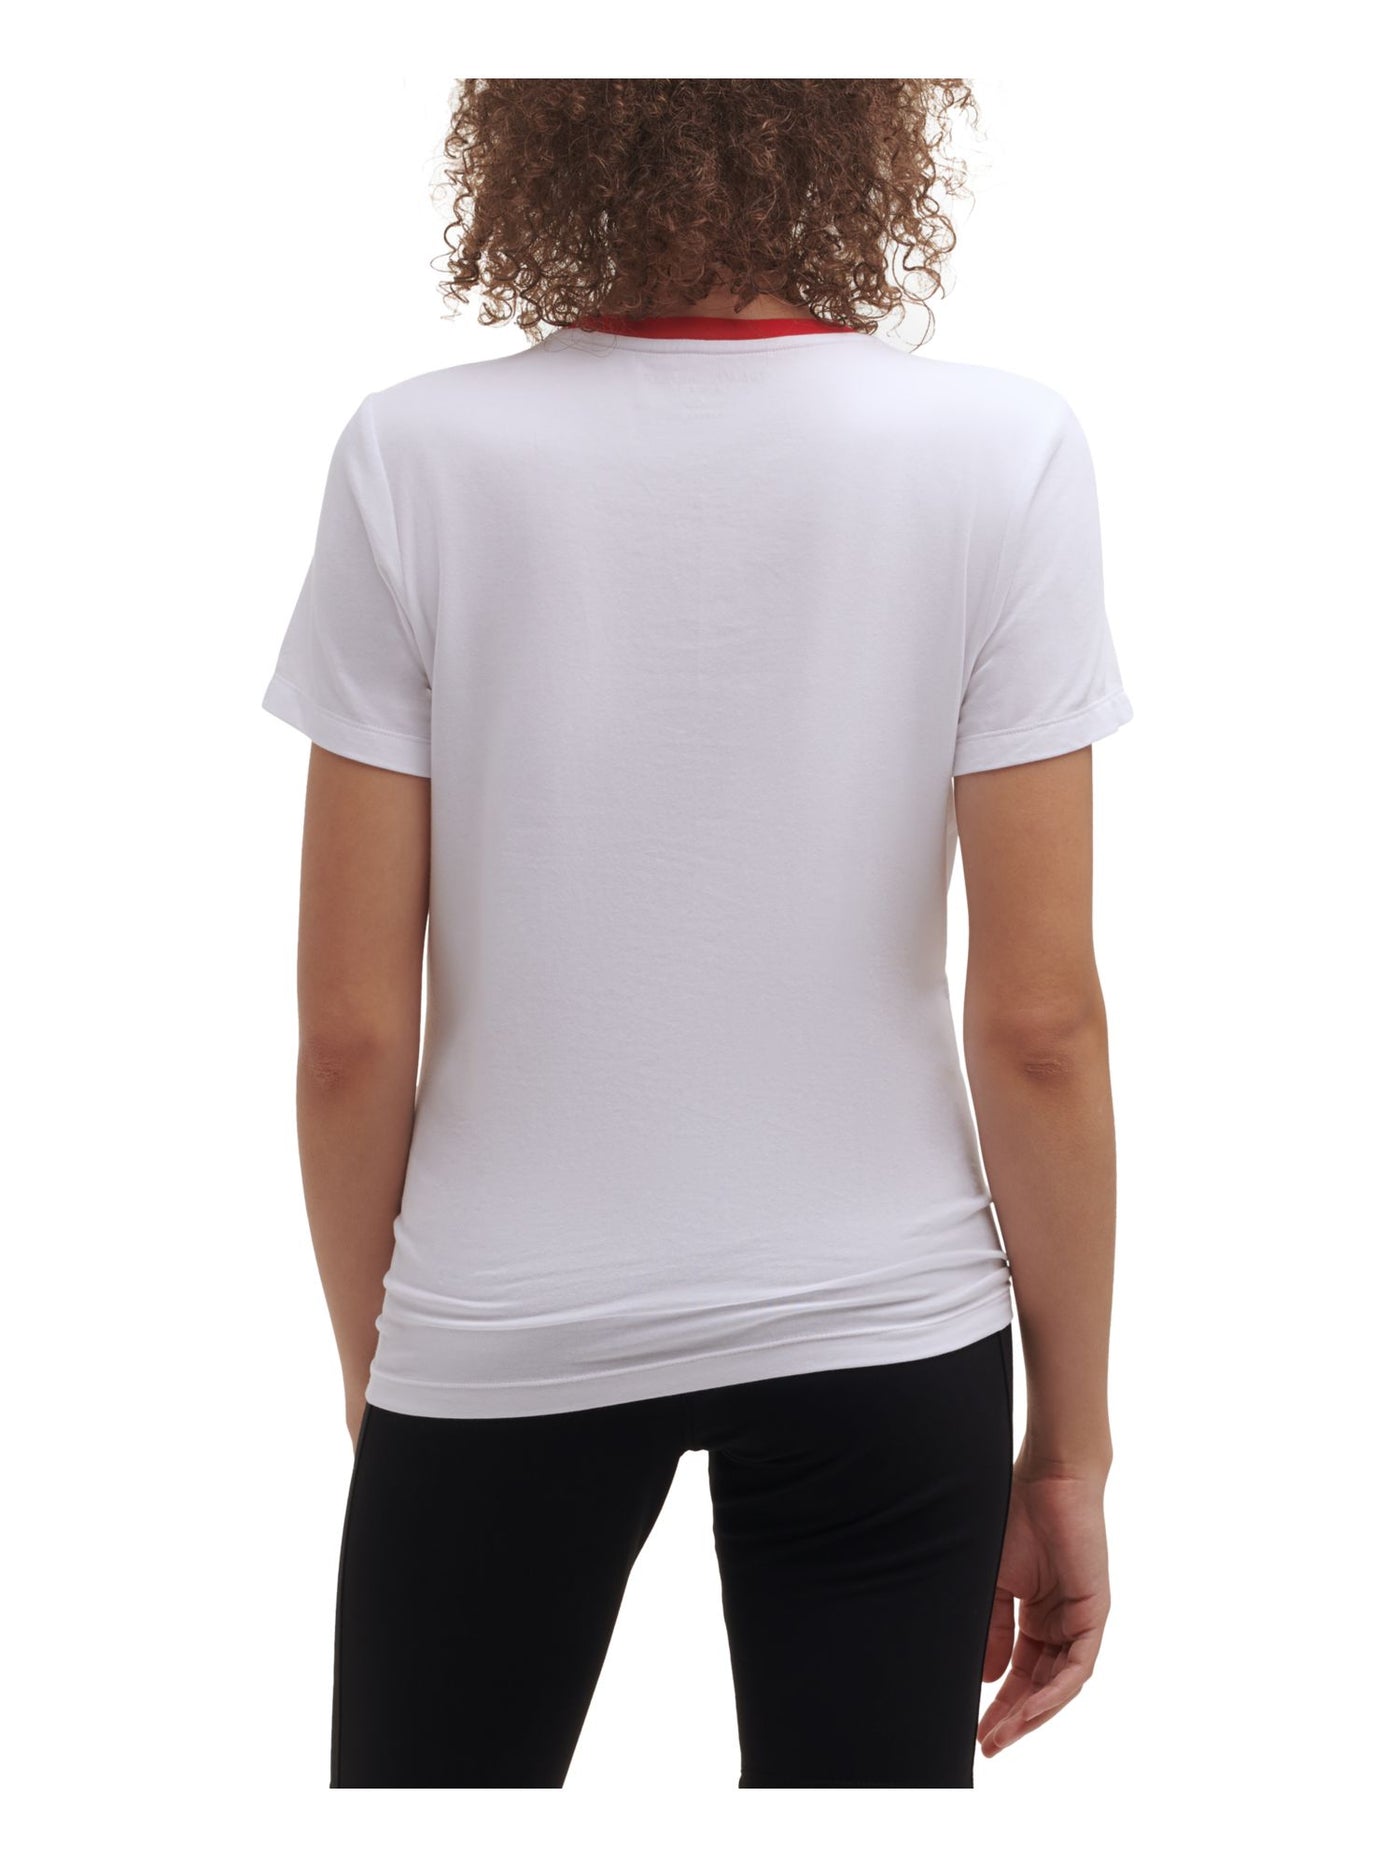 TOMMY HILFIGER SPORT Womens Cotton Blend Short Sleeve Crew Neck T-Shirt